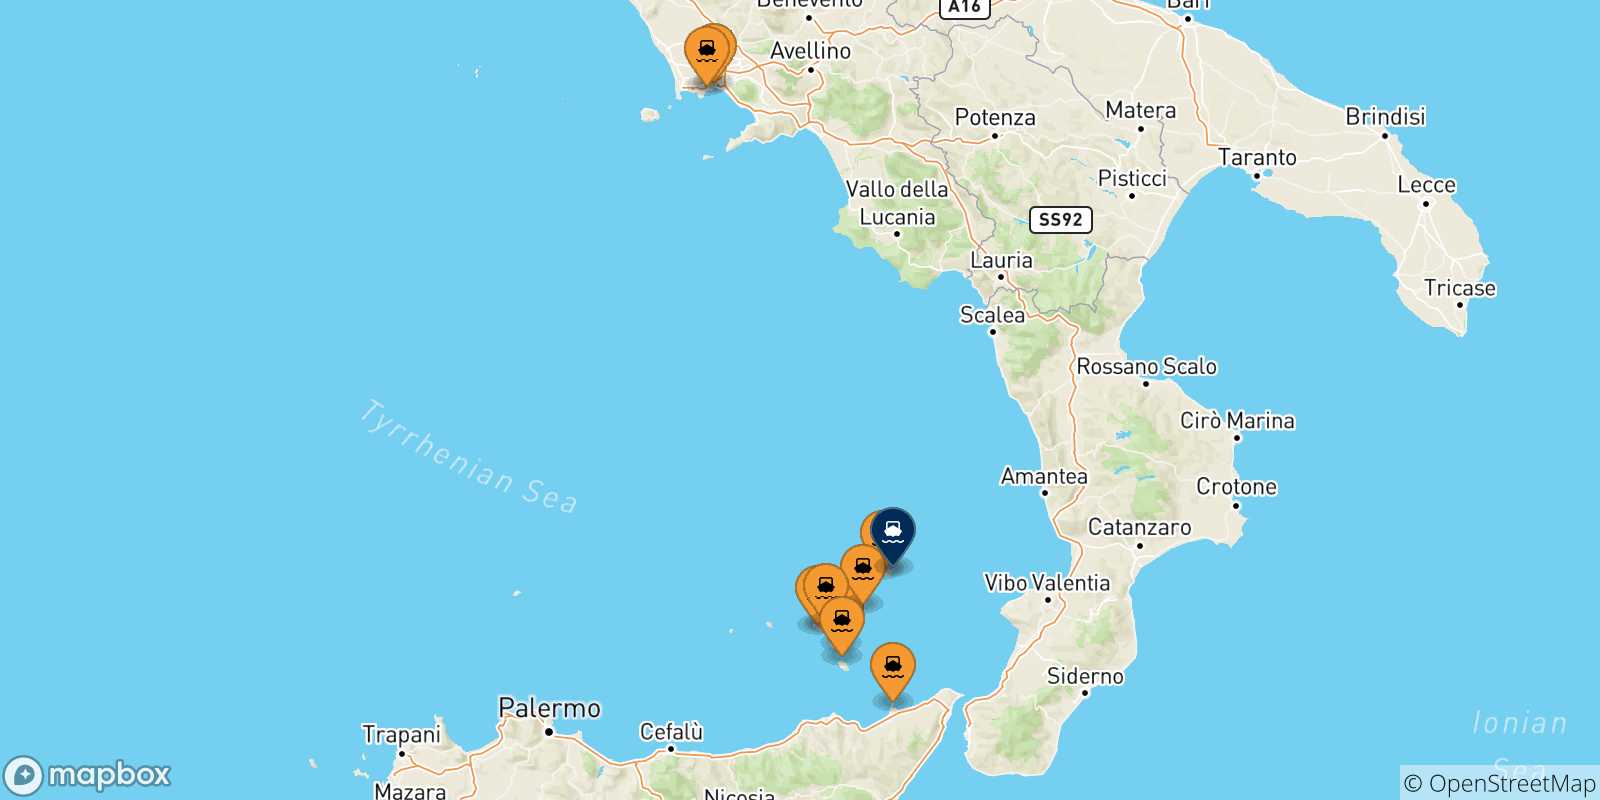 Mappa delle possibili rotte tra l'Italia e Stromboli